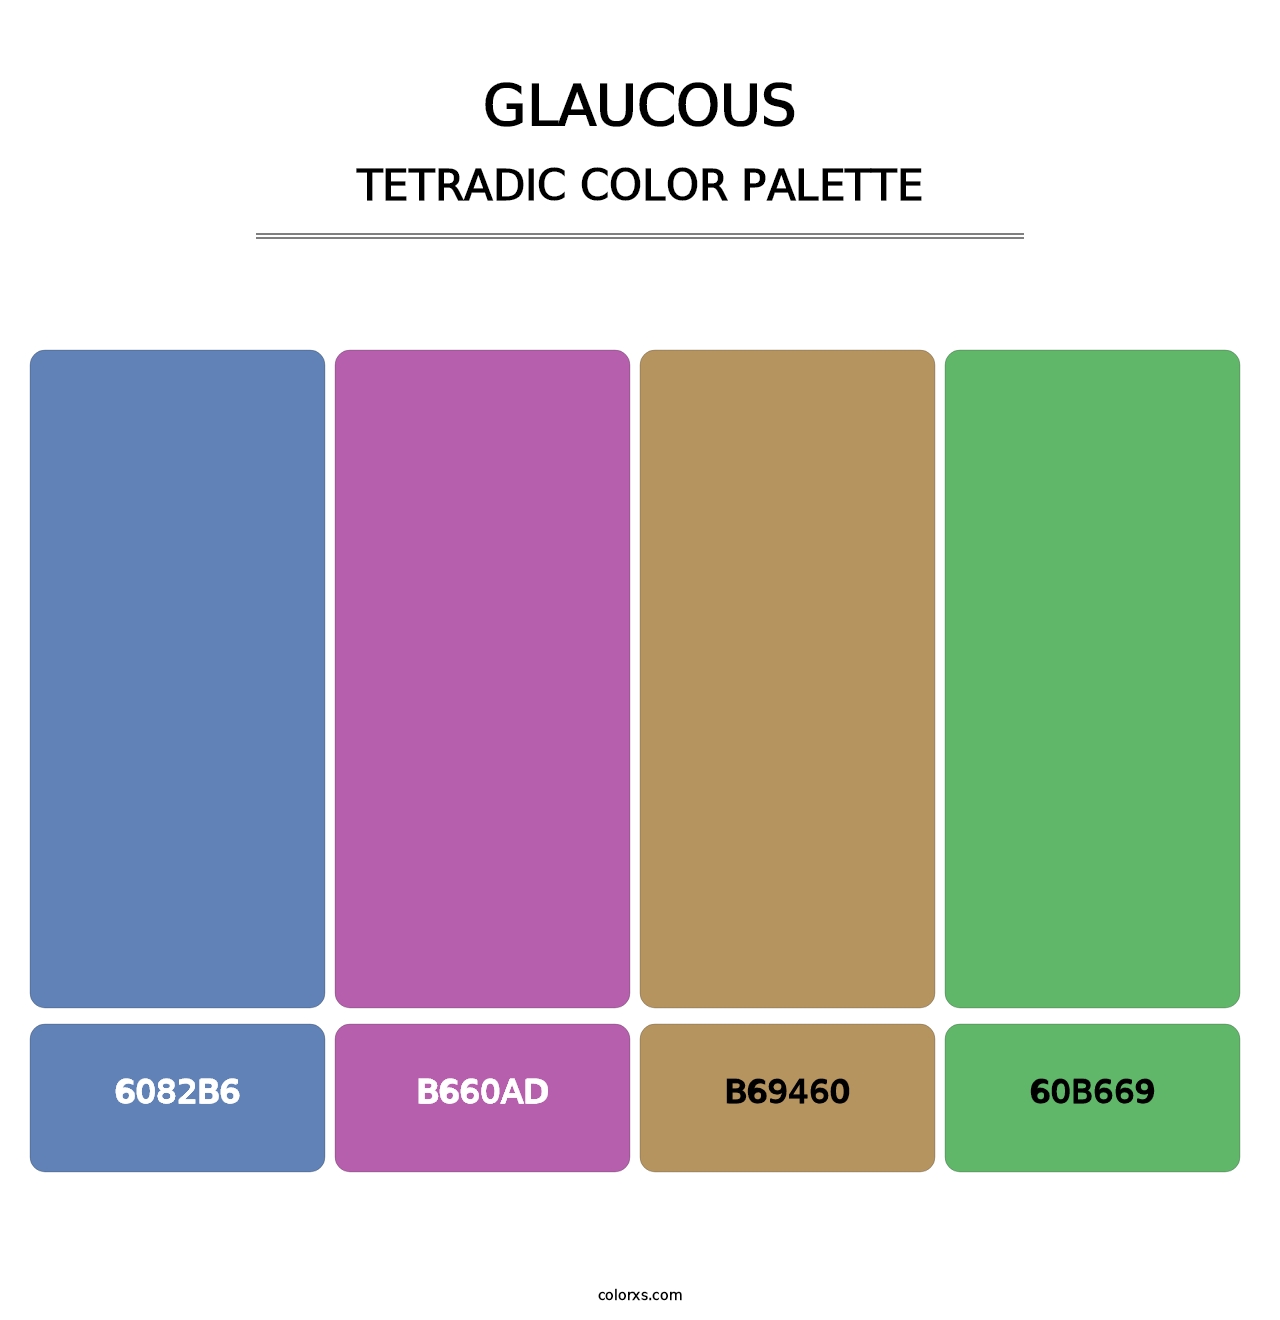 Glaucous - Tetradic Color Palette